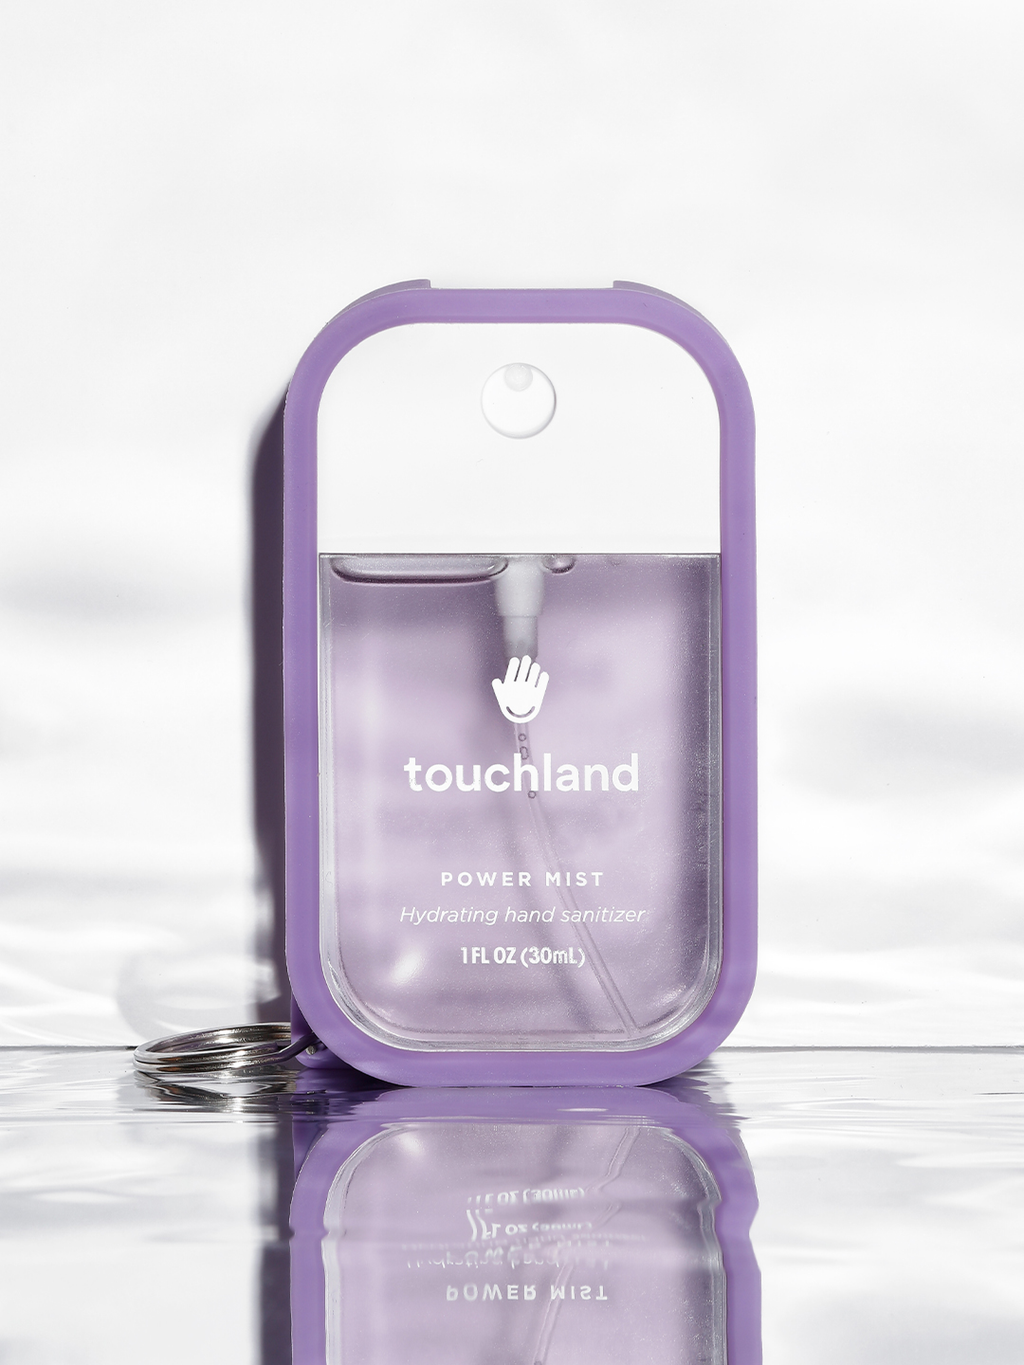 Touchland lavender power mist in purple mist case on white background#skip